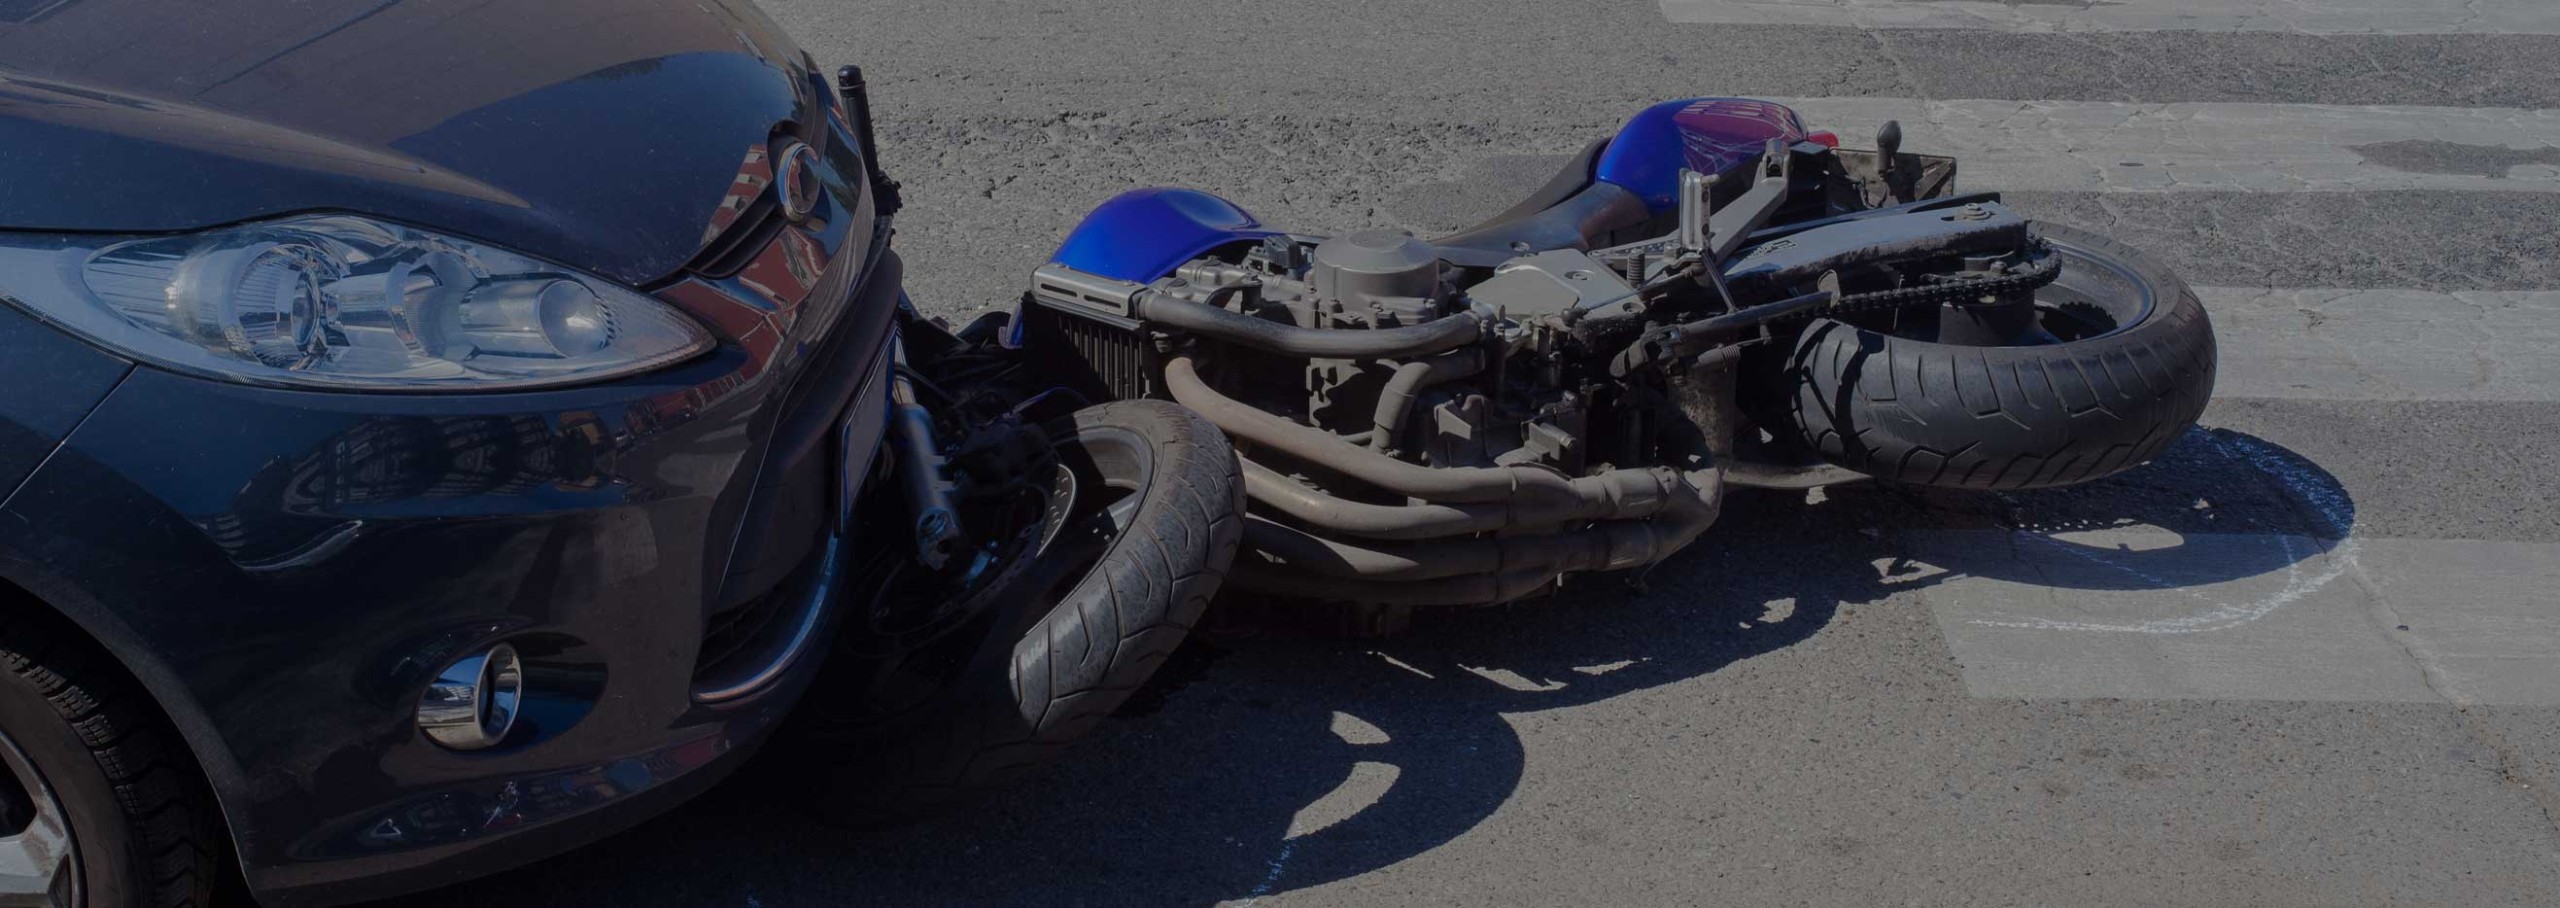 Motorcycle Accident Attorneys Colorado Springs